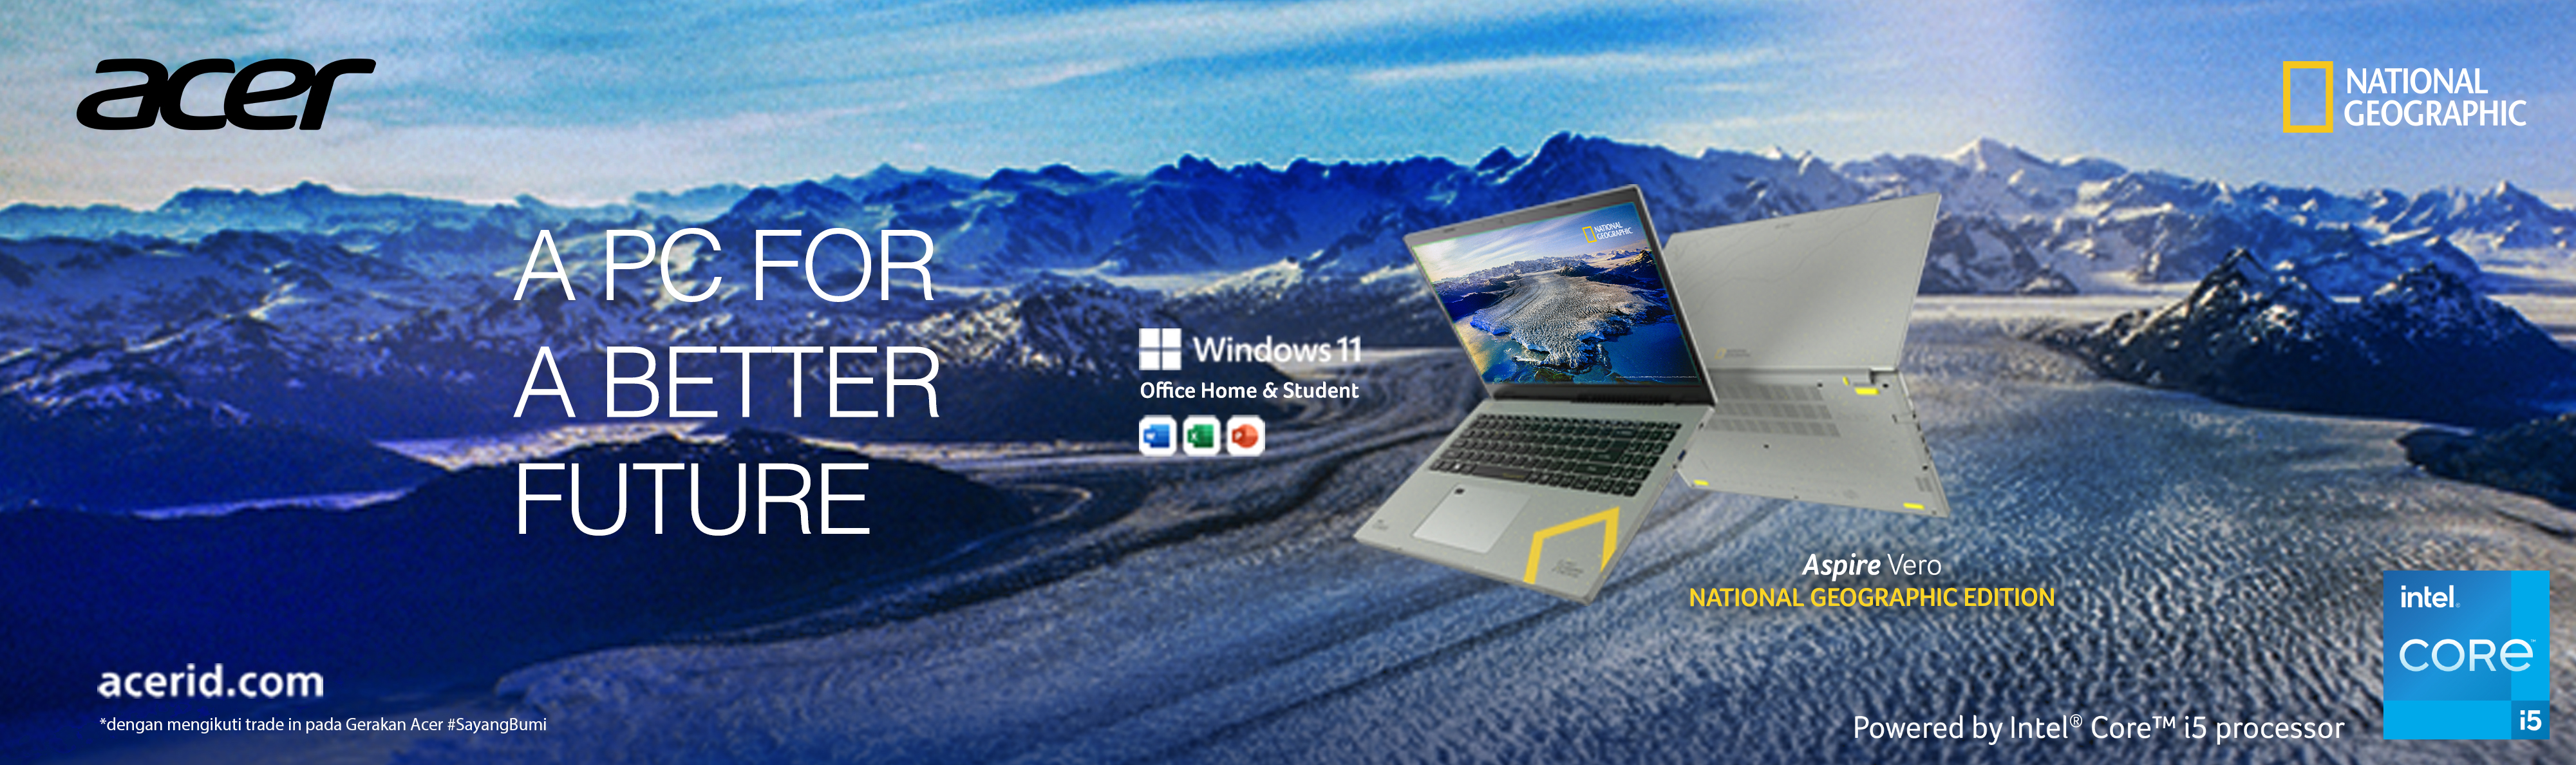 Acer dan National Geographic Hadirkan Kolaborasi Laptop Eco Friendly Untuk Bumi Yang Lebih Baik